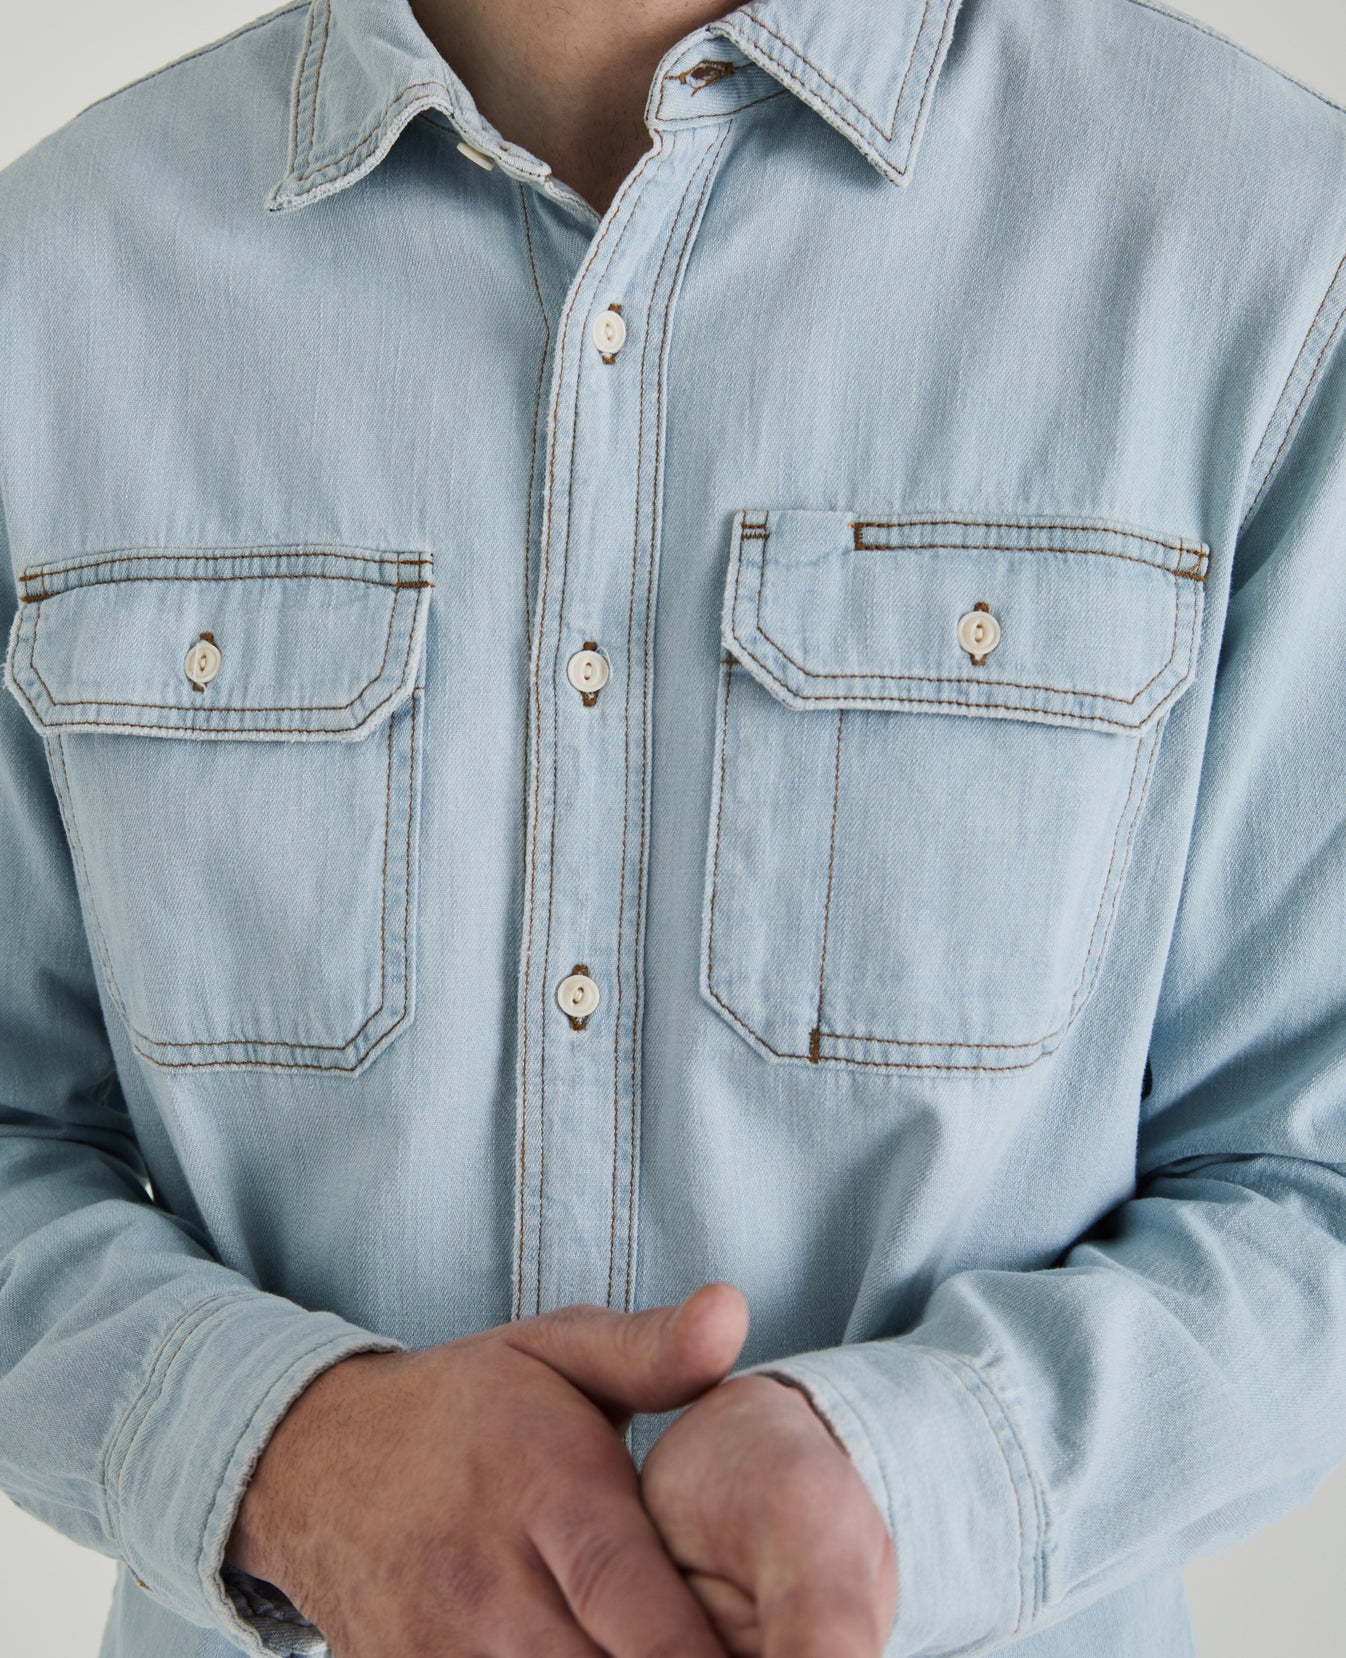 Benning Utility Shirt Ricochet Long Sleeve Buttondown Men Tops Photo 3